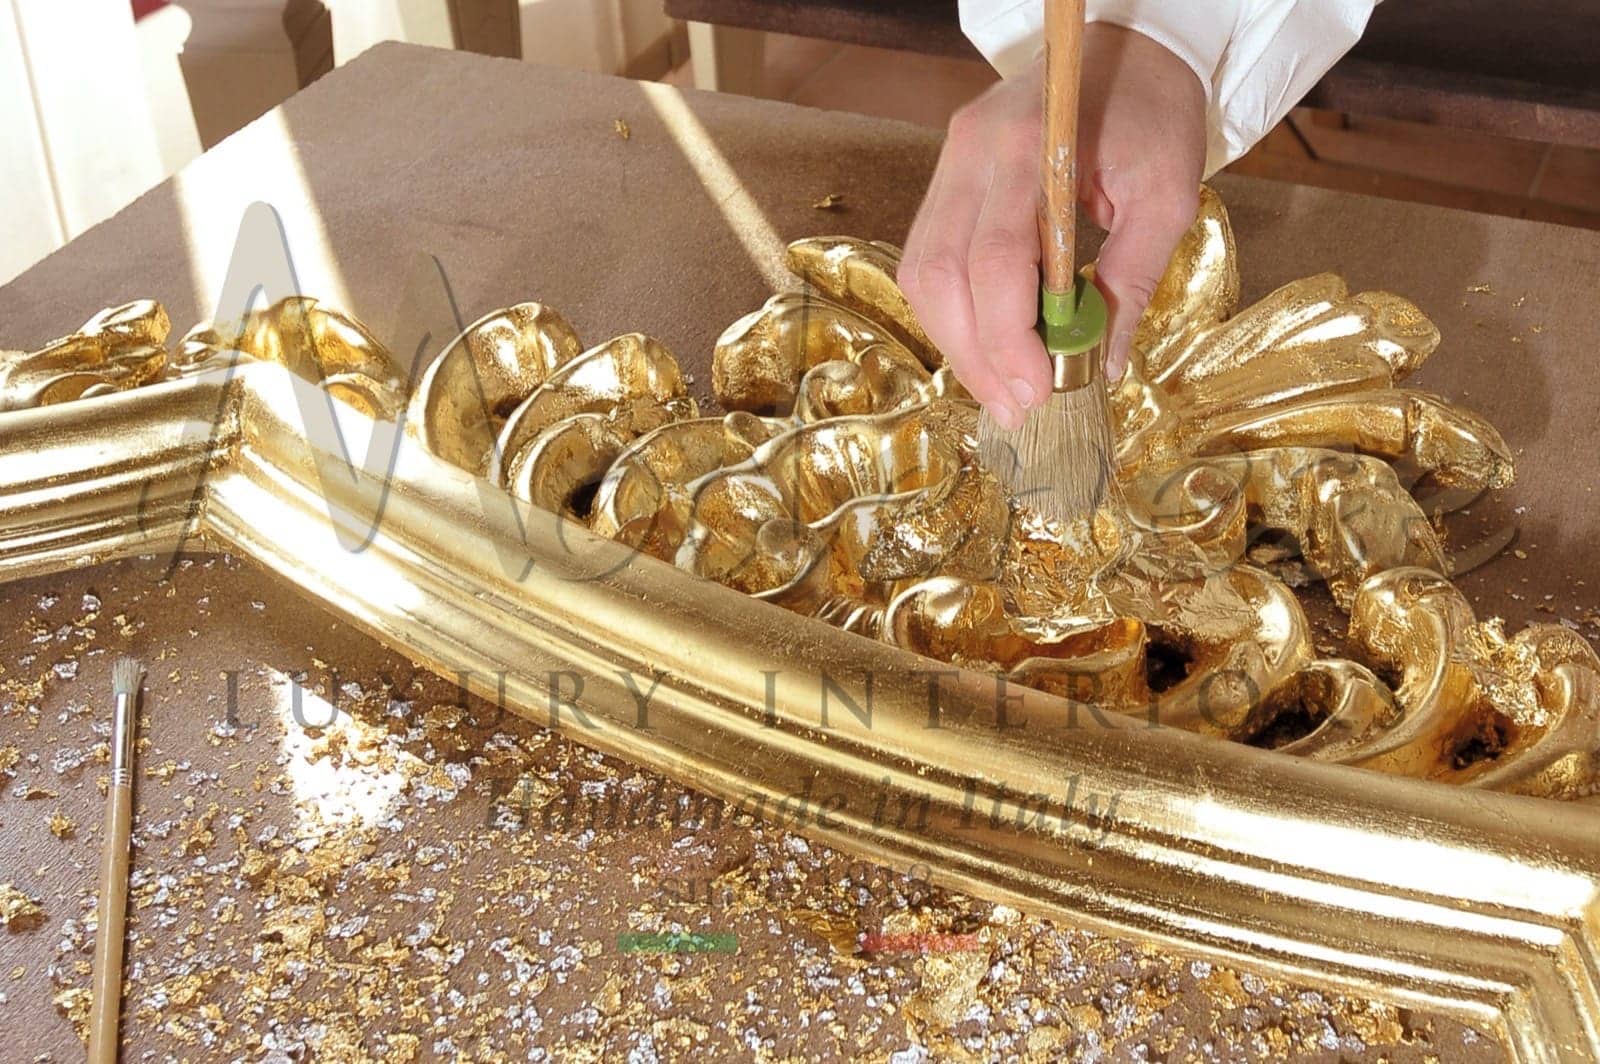 zlaté stříbro 24k vyřezávaný nábytek ručně vyrobený v Itálii luxusní italské kousky interiérový design řemeslná výroba ruční výroba řemeslníků benátský rokokový barokní styl luxusní dekorace